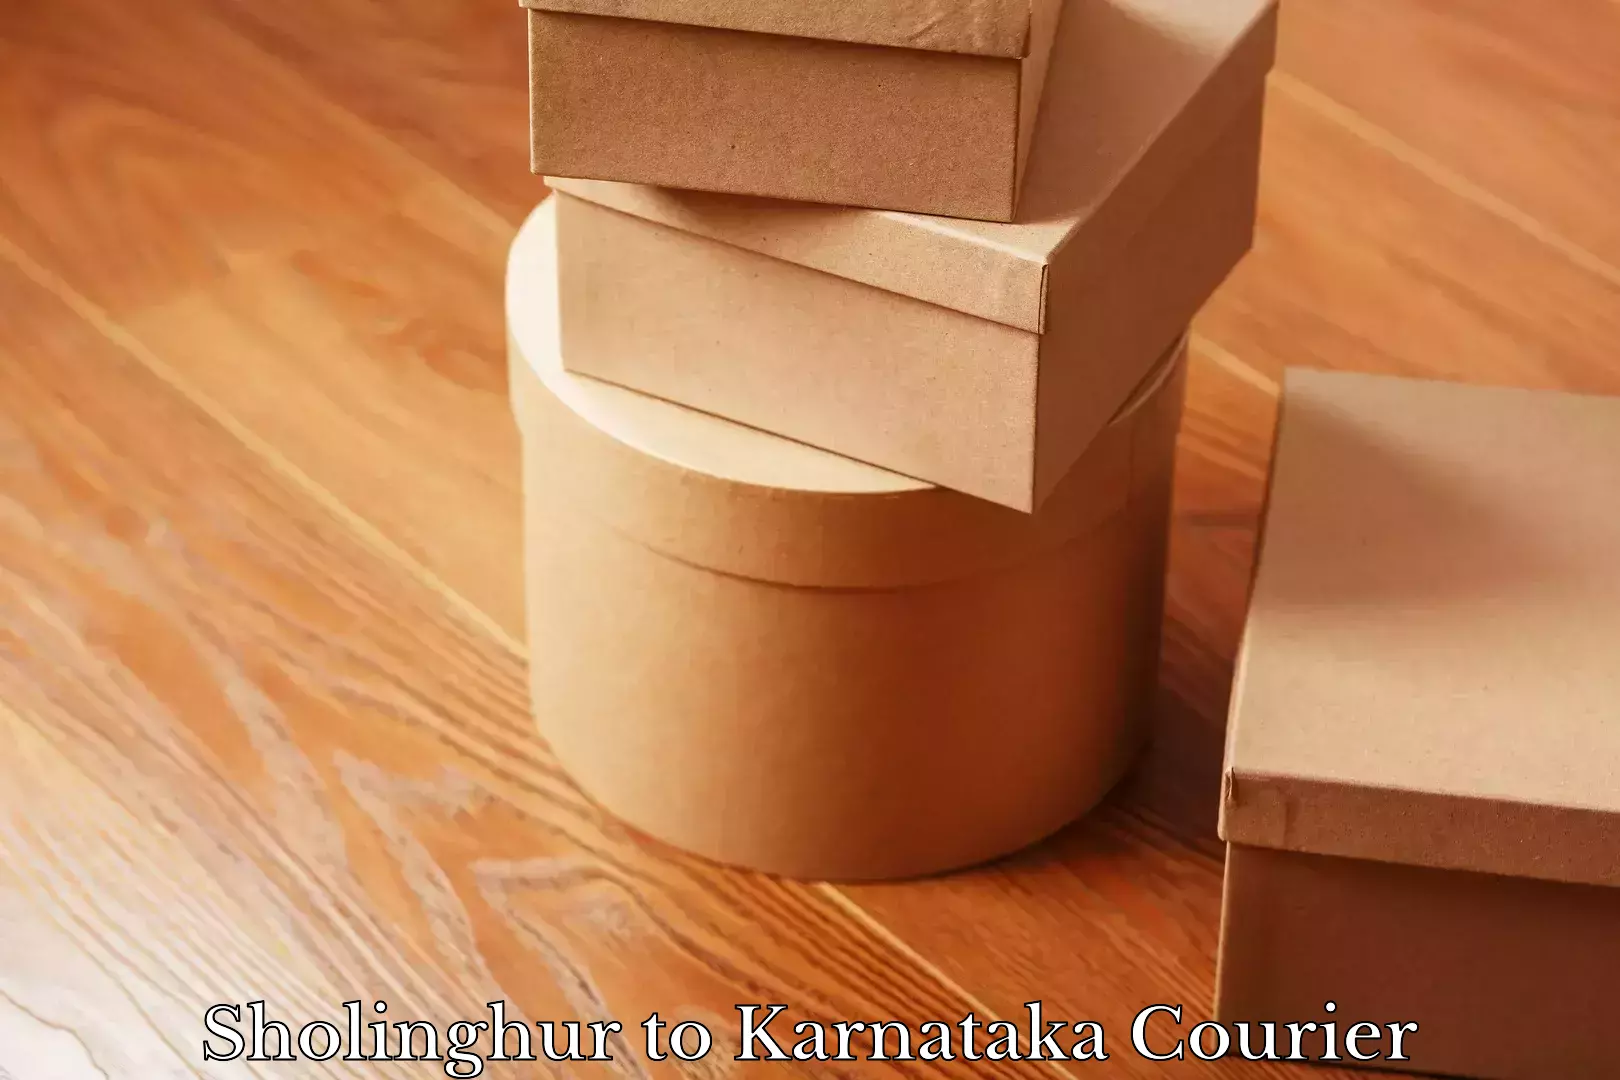 Nationwide parcel services Sholinghur to Karnataka